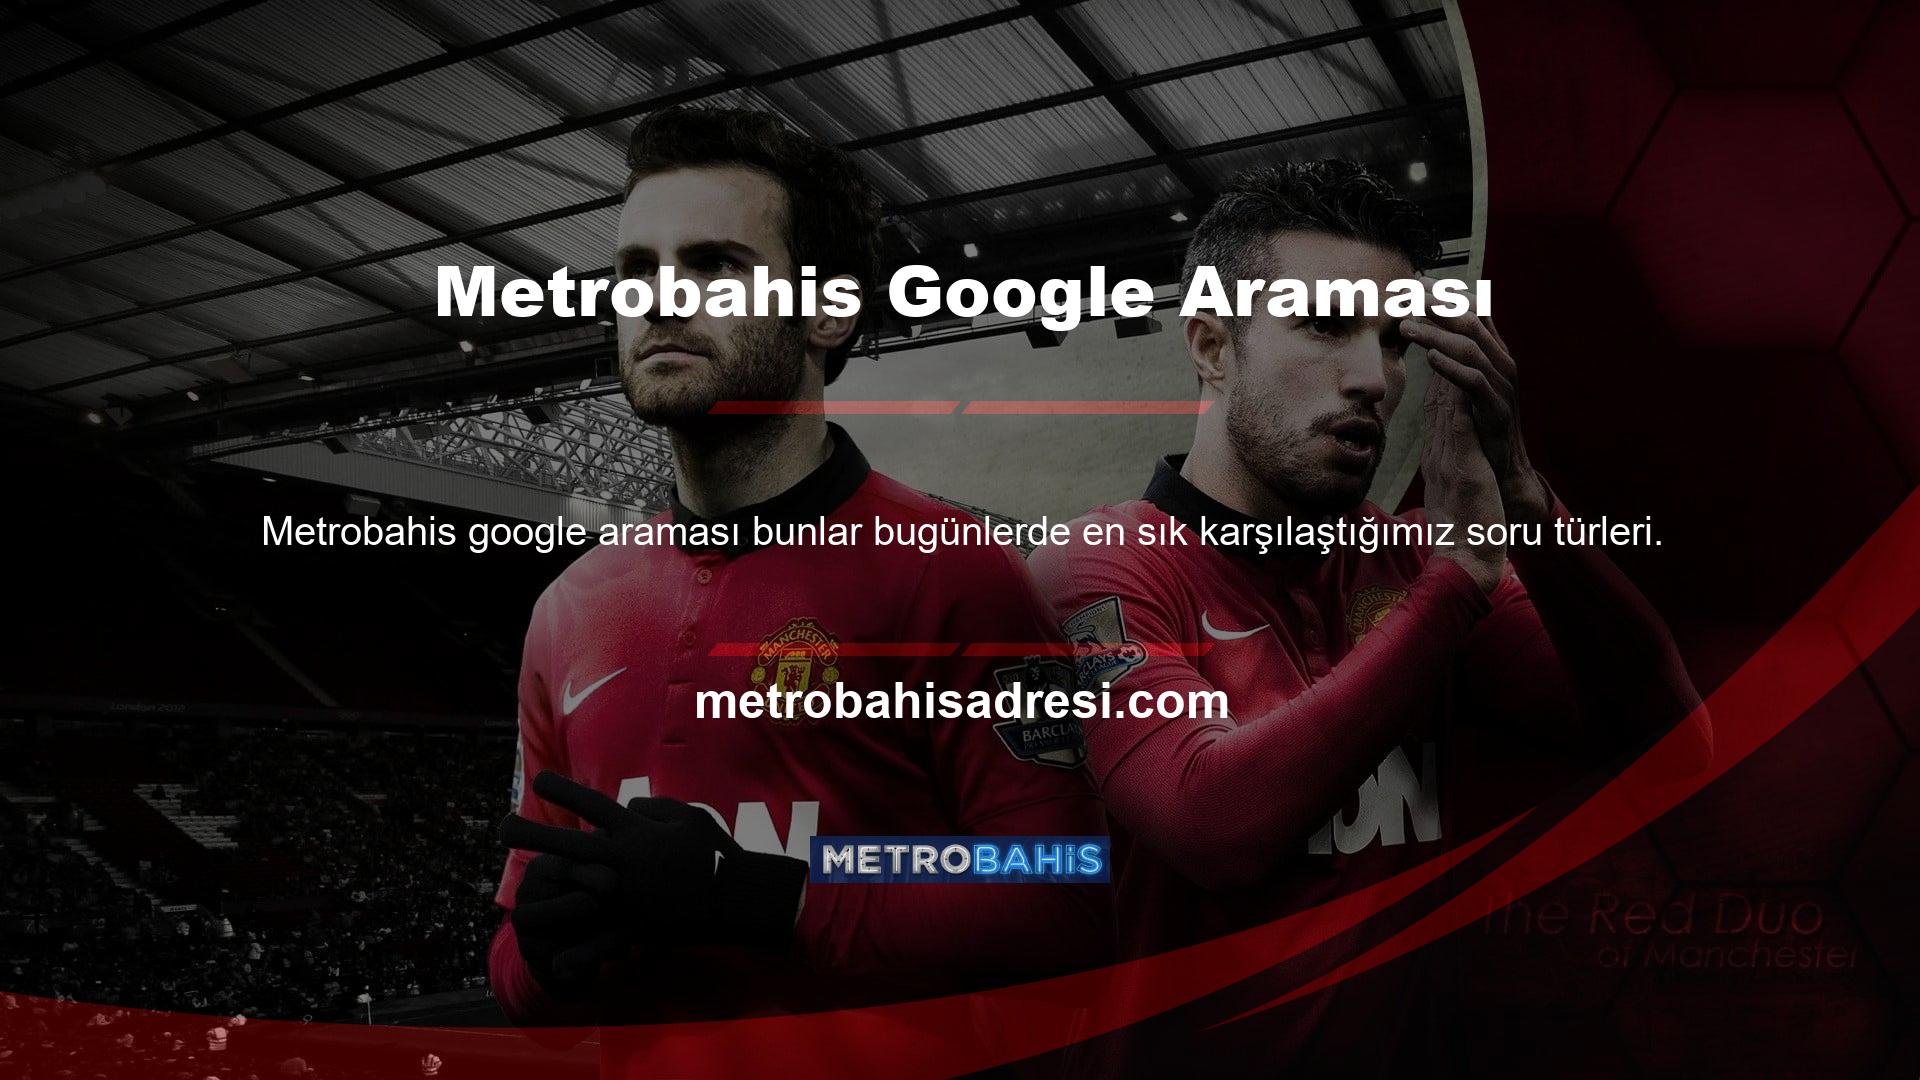 Kullanıcıların Google'da Metrobahis araması yaptıklarında ilk kez bu soruyla karşılaştıklarını görebilirsiniz